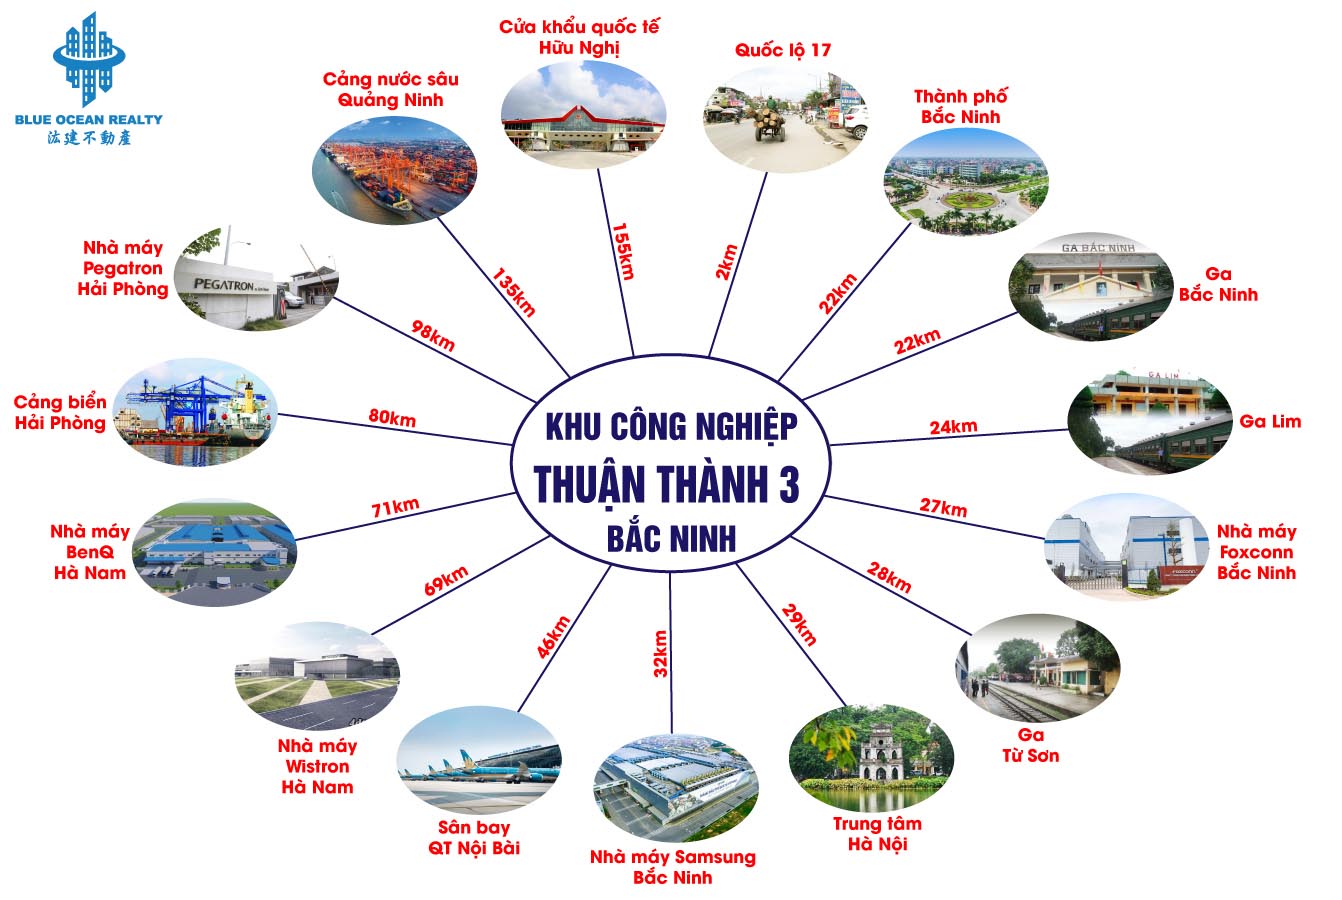 Khu công nghiệp Thuận Thành 3 - Bắc Ninh